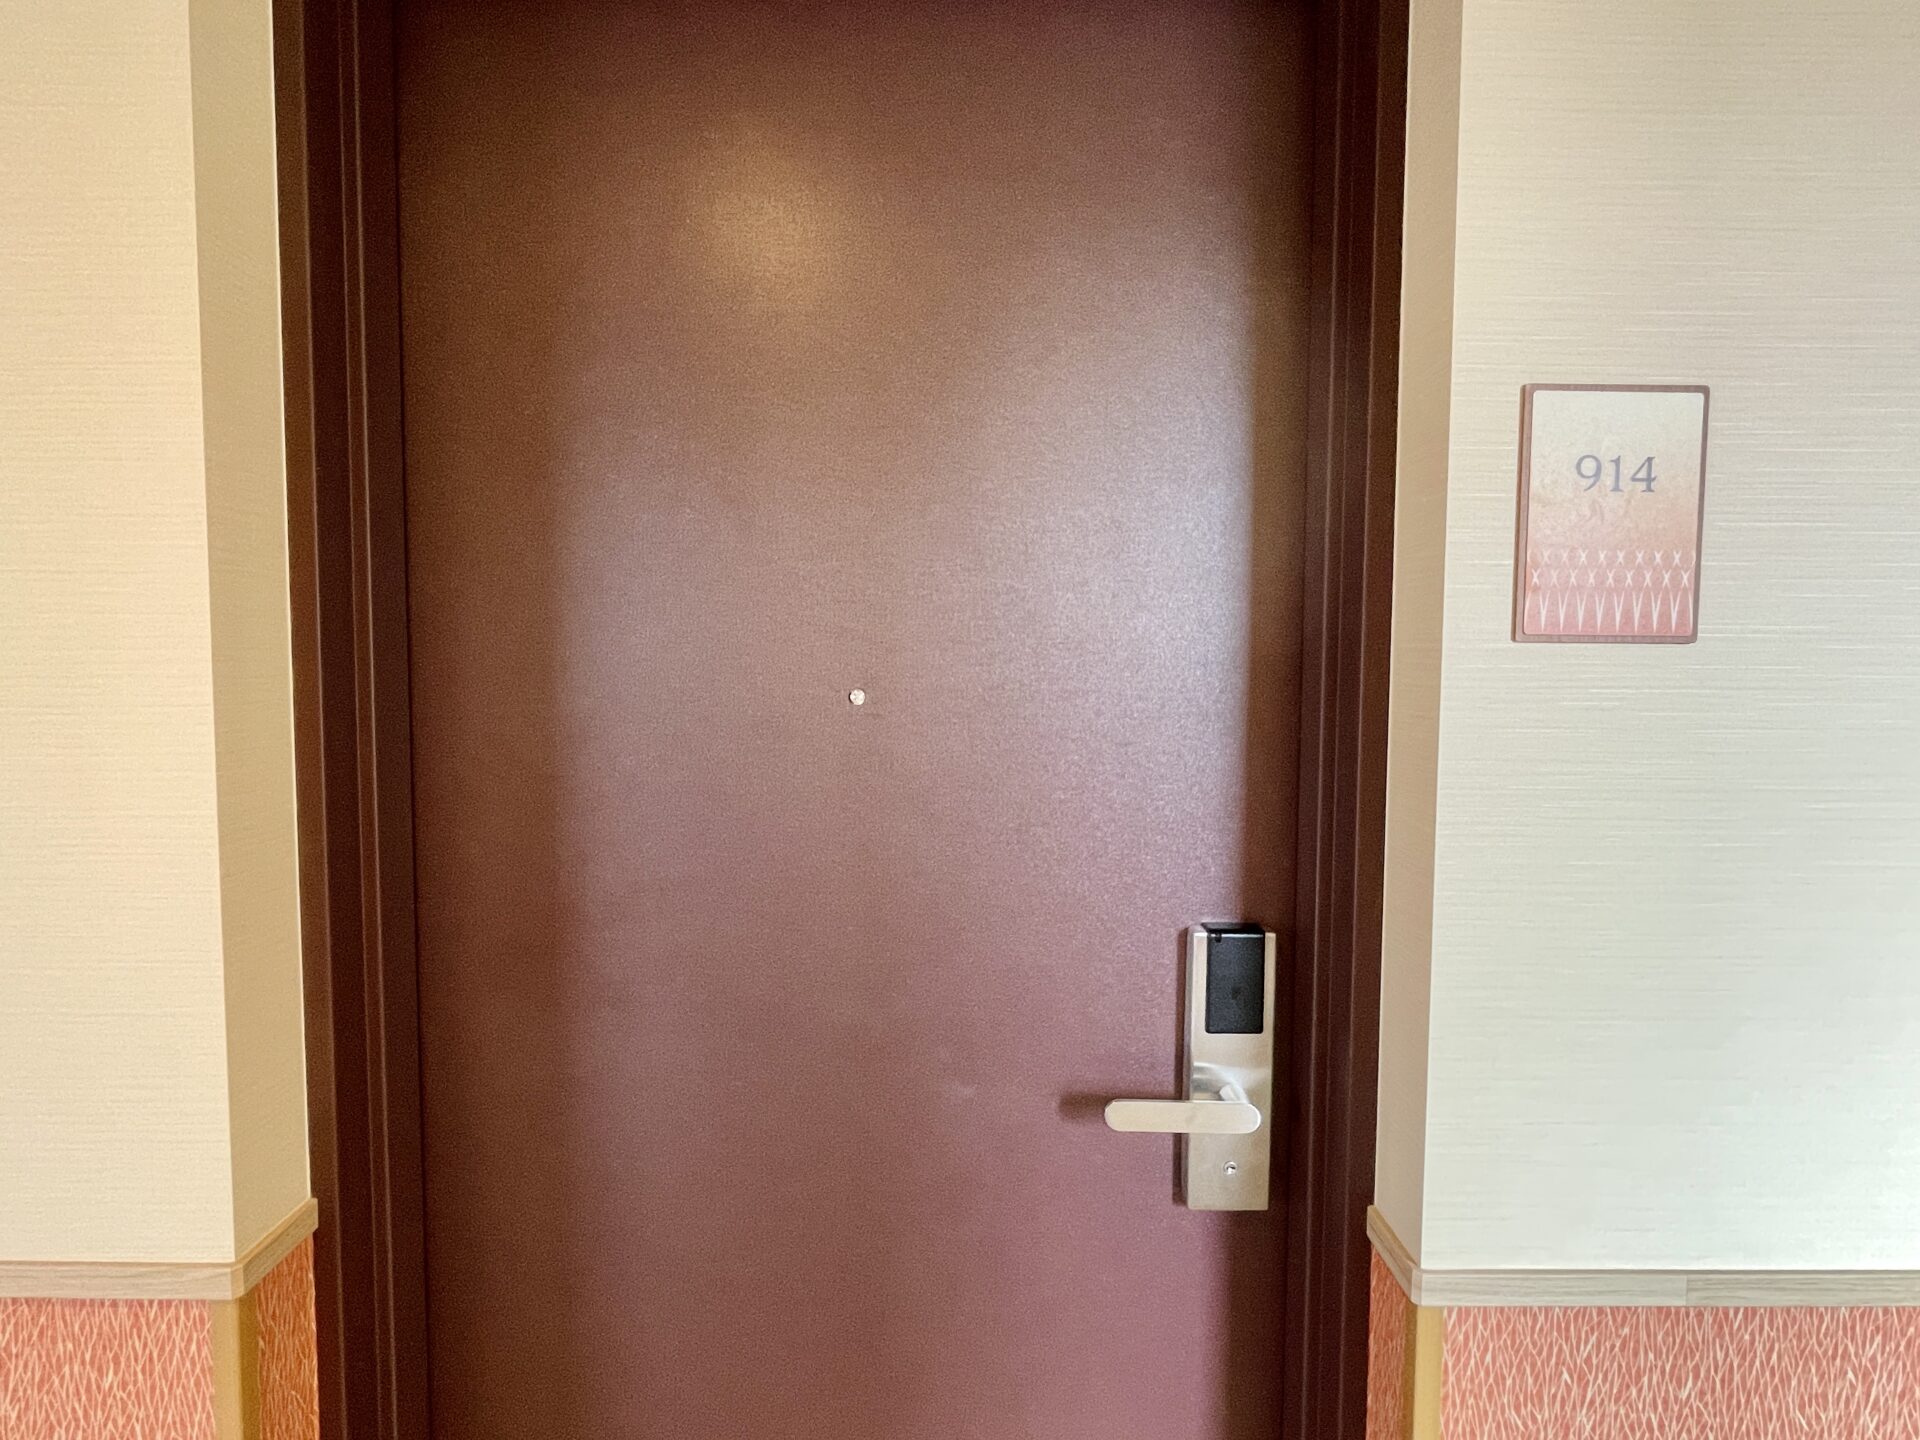 「御宿 野乃 浅草」ダブルルーム(コーナールーム) 客室入口